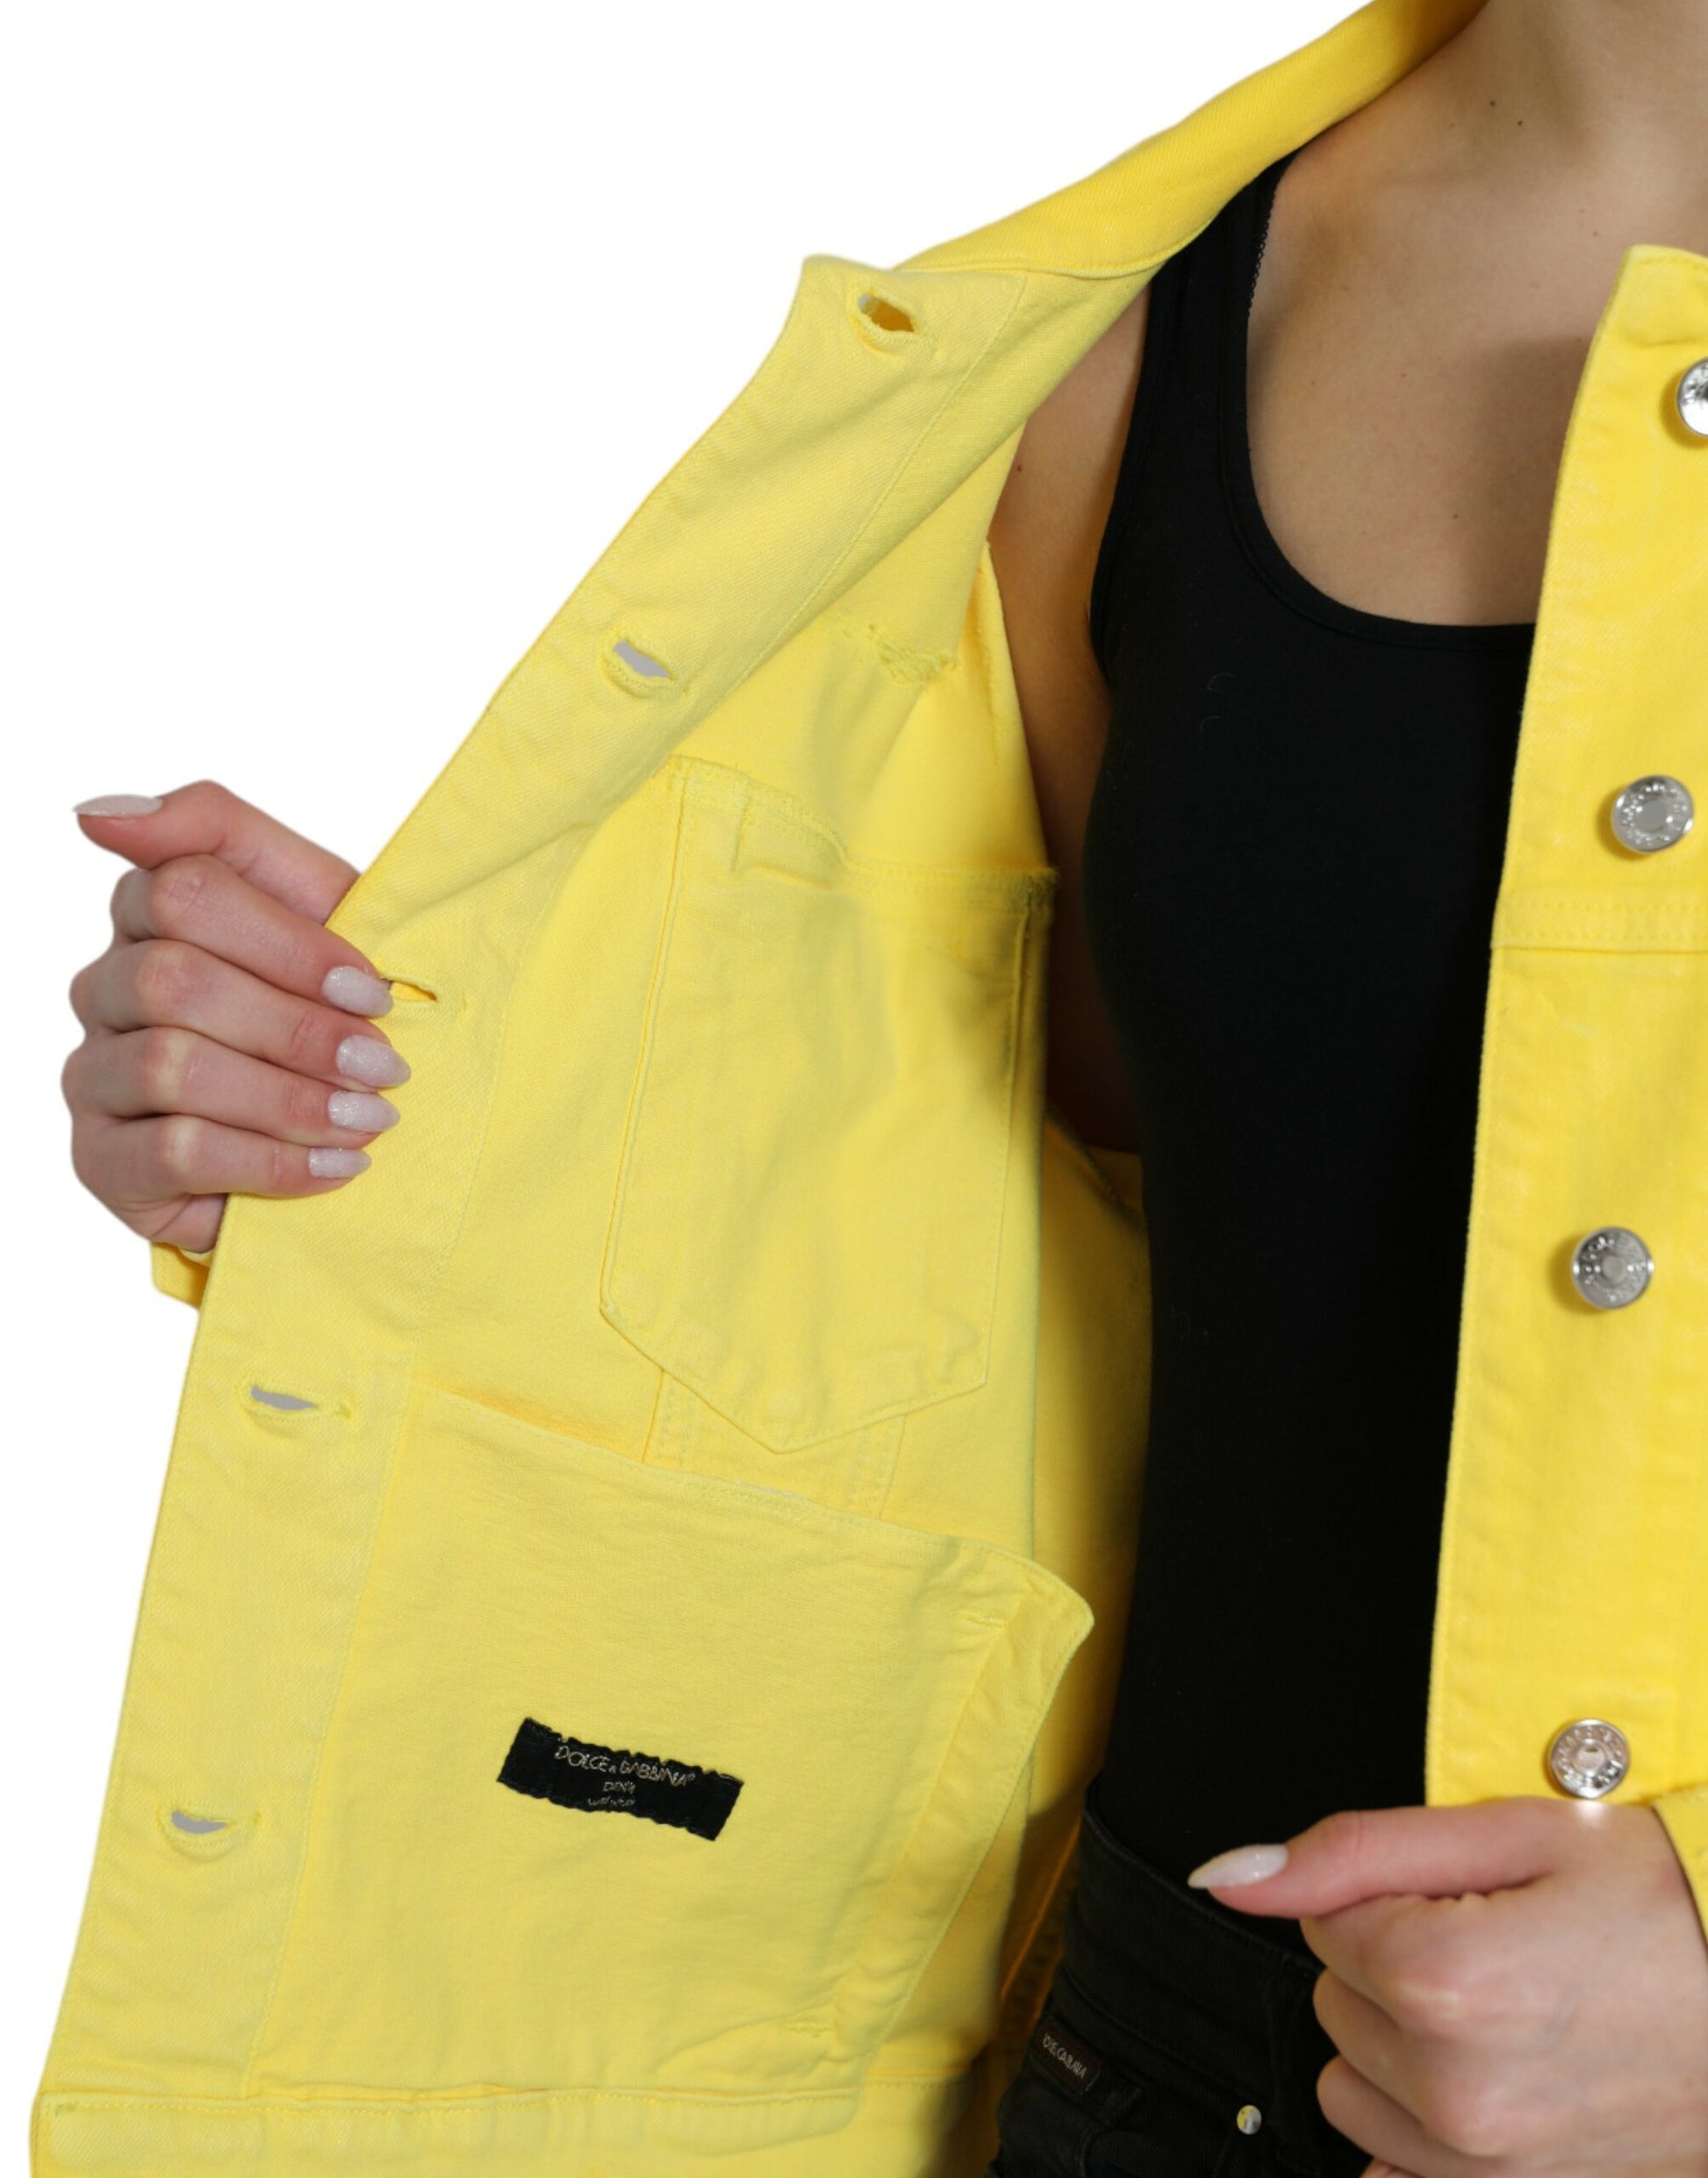 Chic Yellow Denim Button-Down Jacket